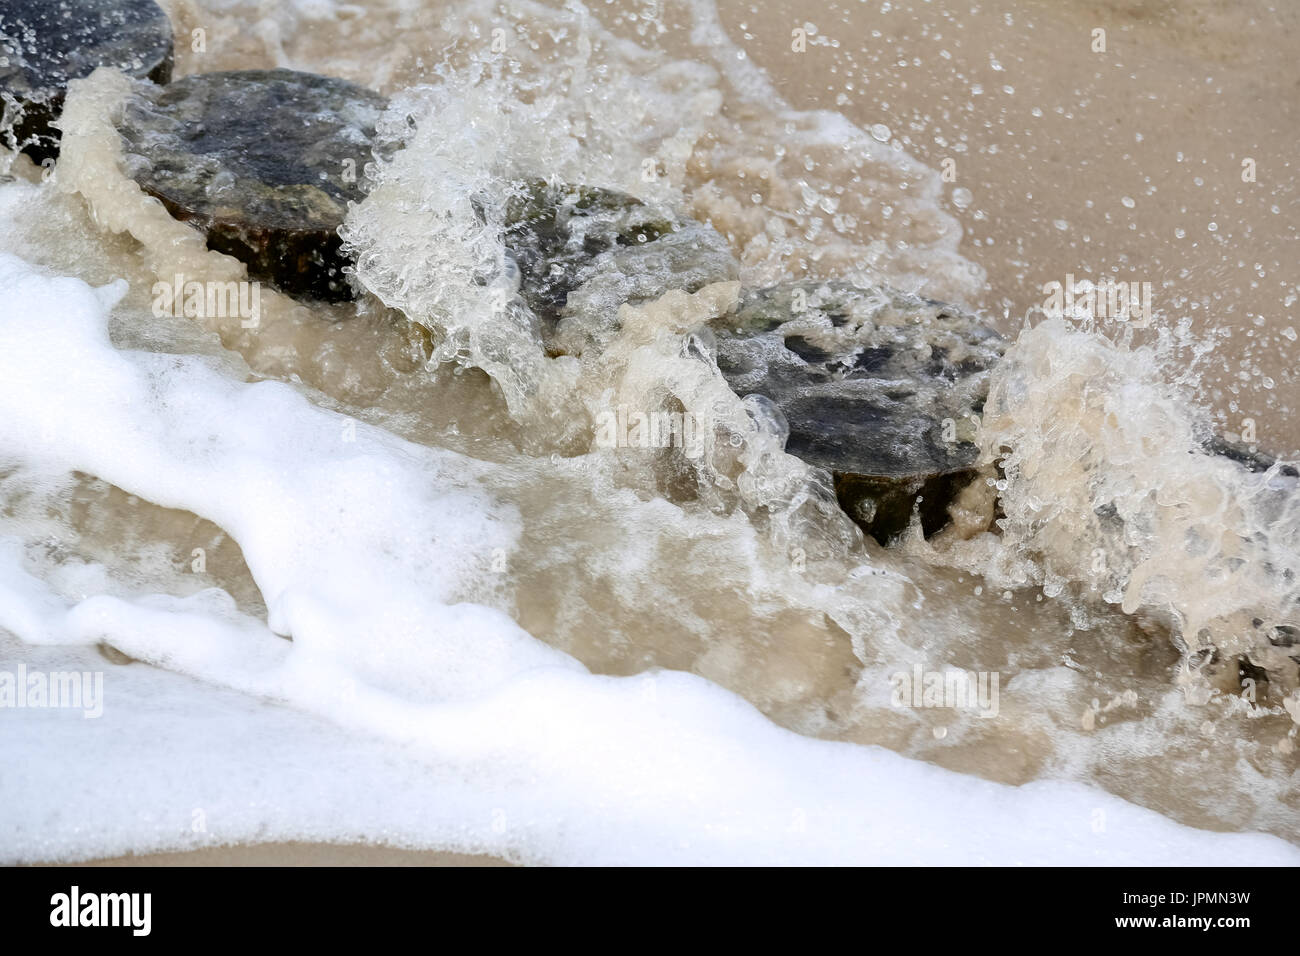 La mer vague éclabousse le brise-lames en bois. C'est vue sur la plage de sable de Kolobrzeg en Pologne Banque D'Images